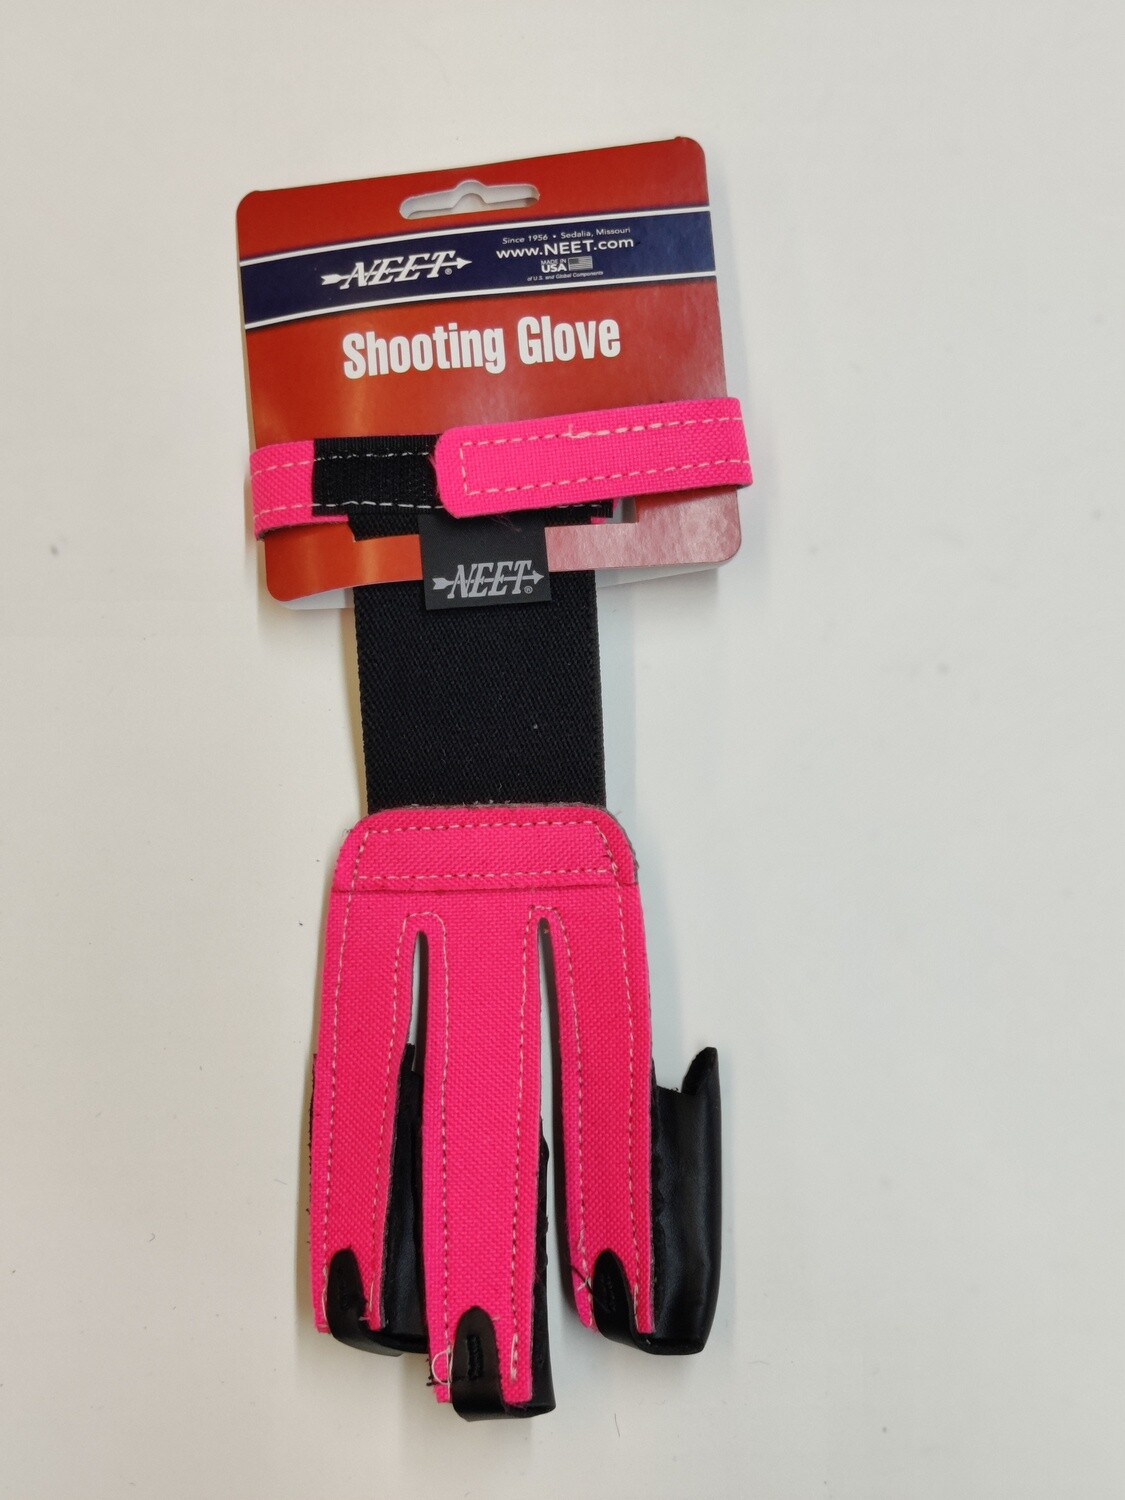 Nylon Glove